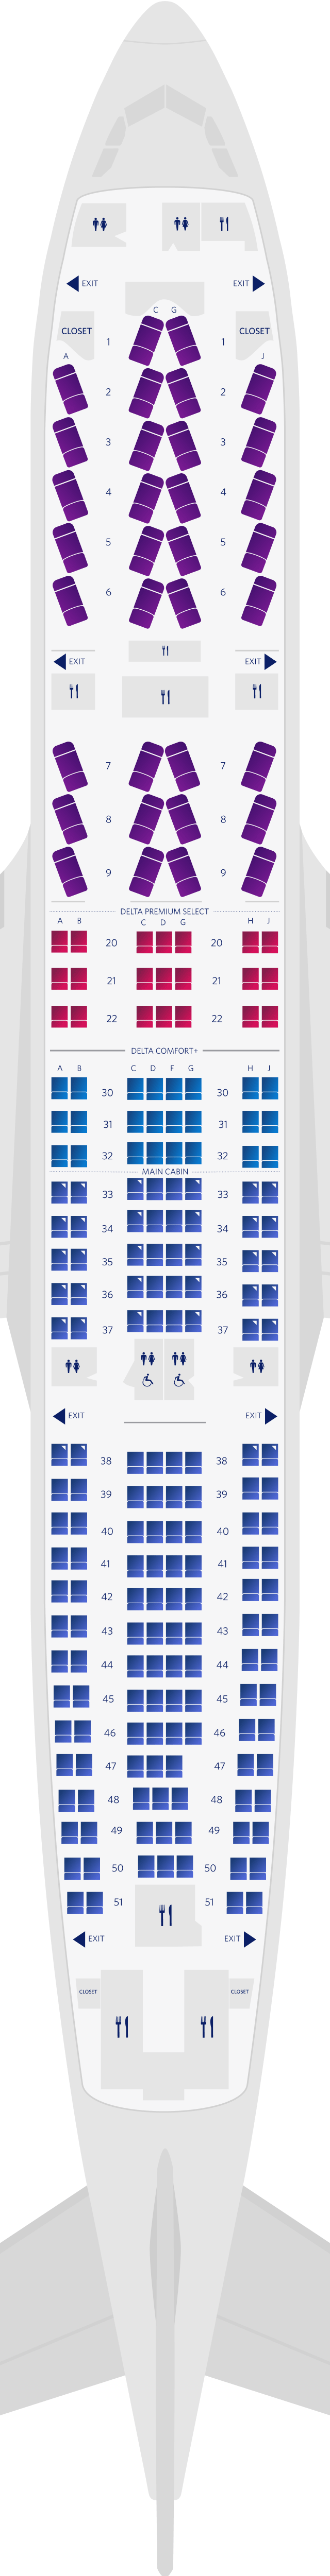 空中巴士A330-200四客艙座位圖